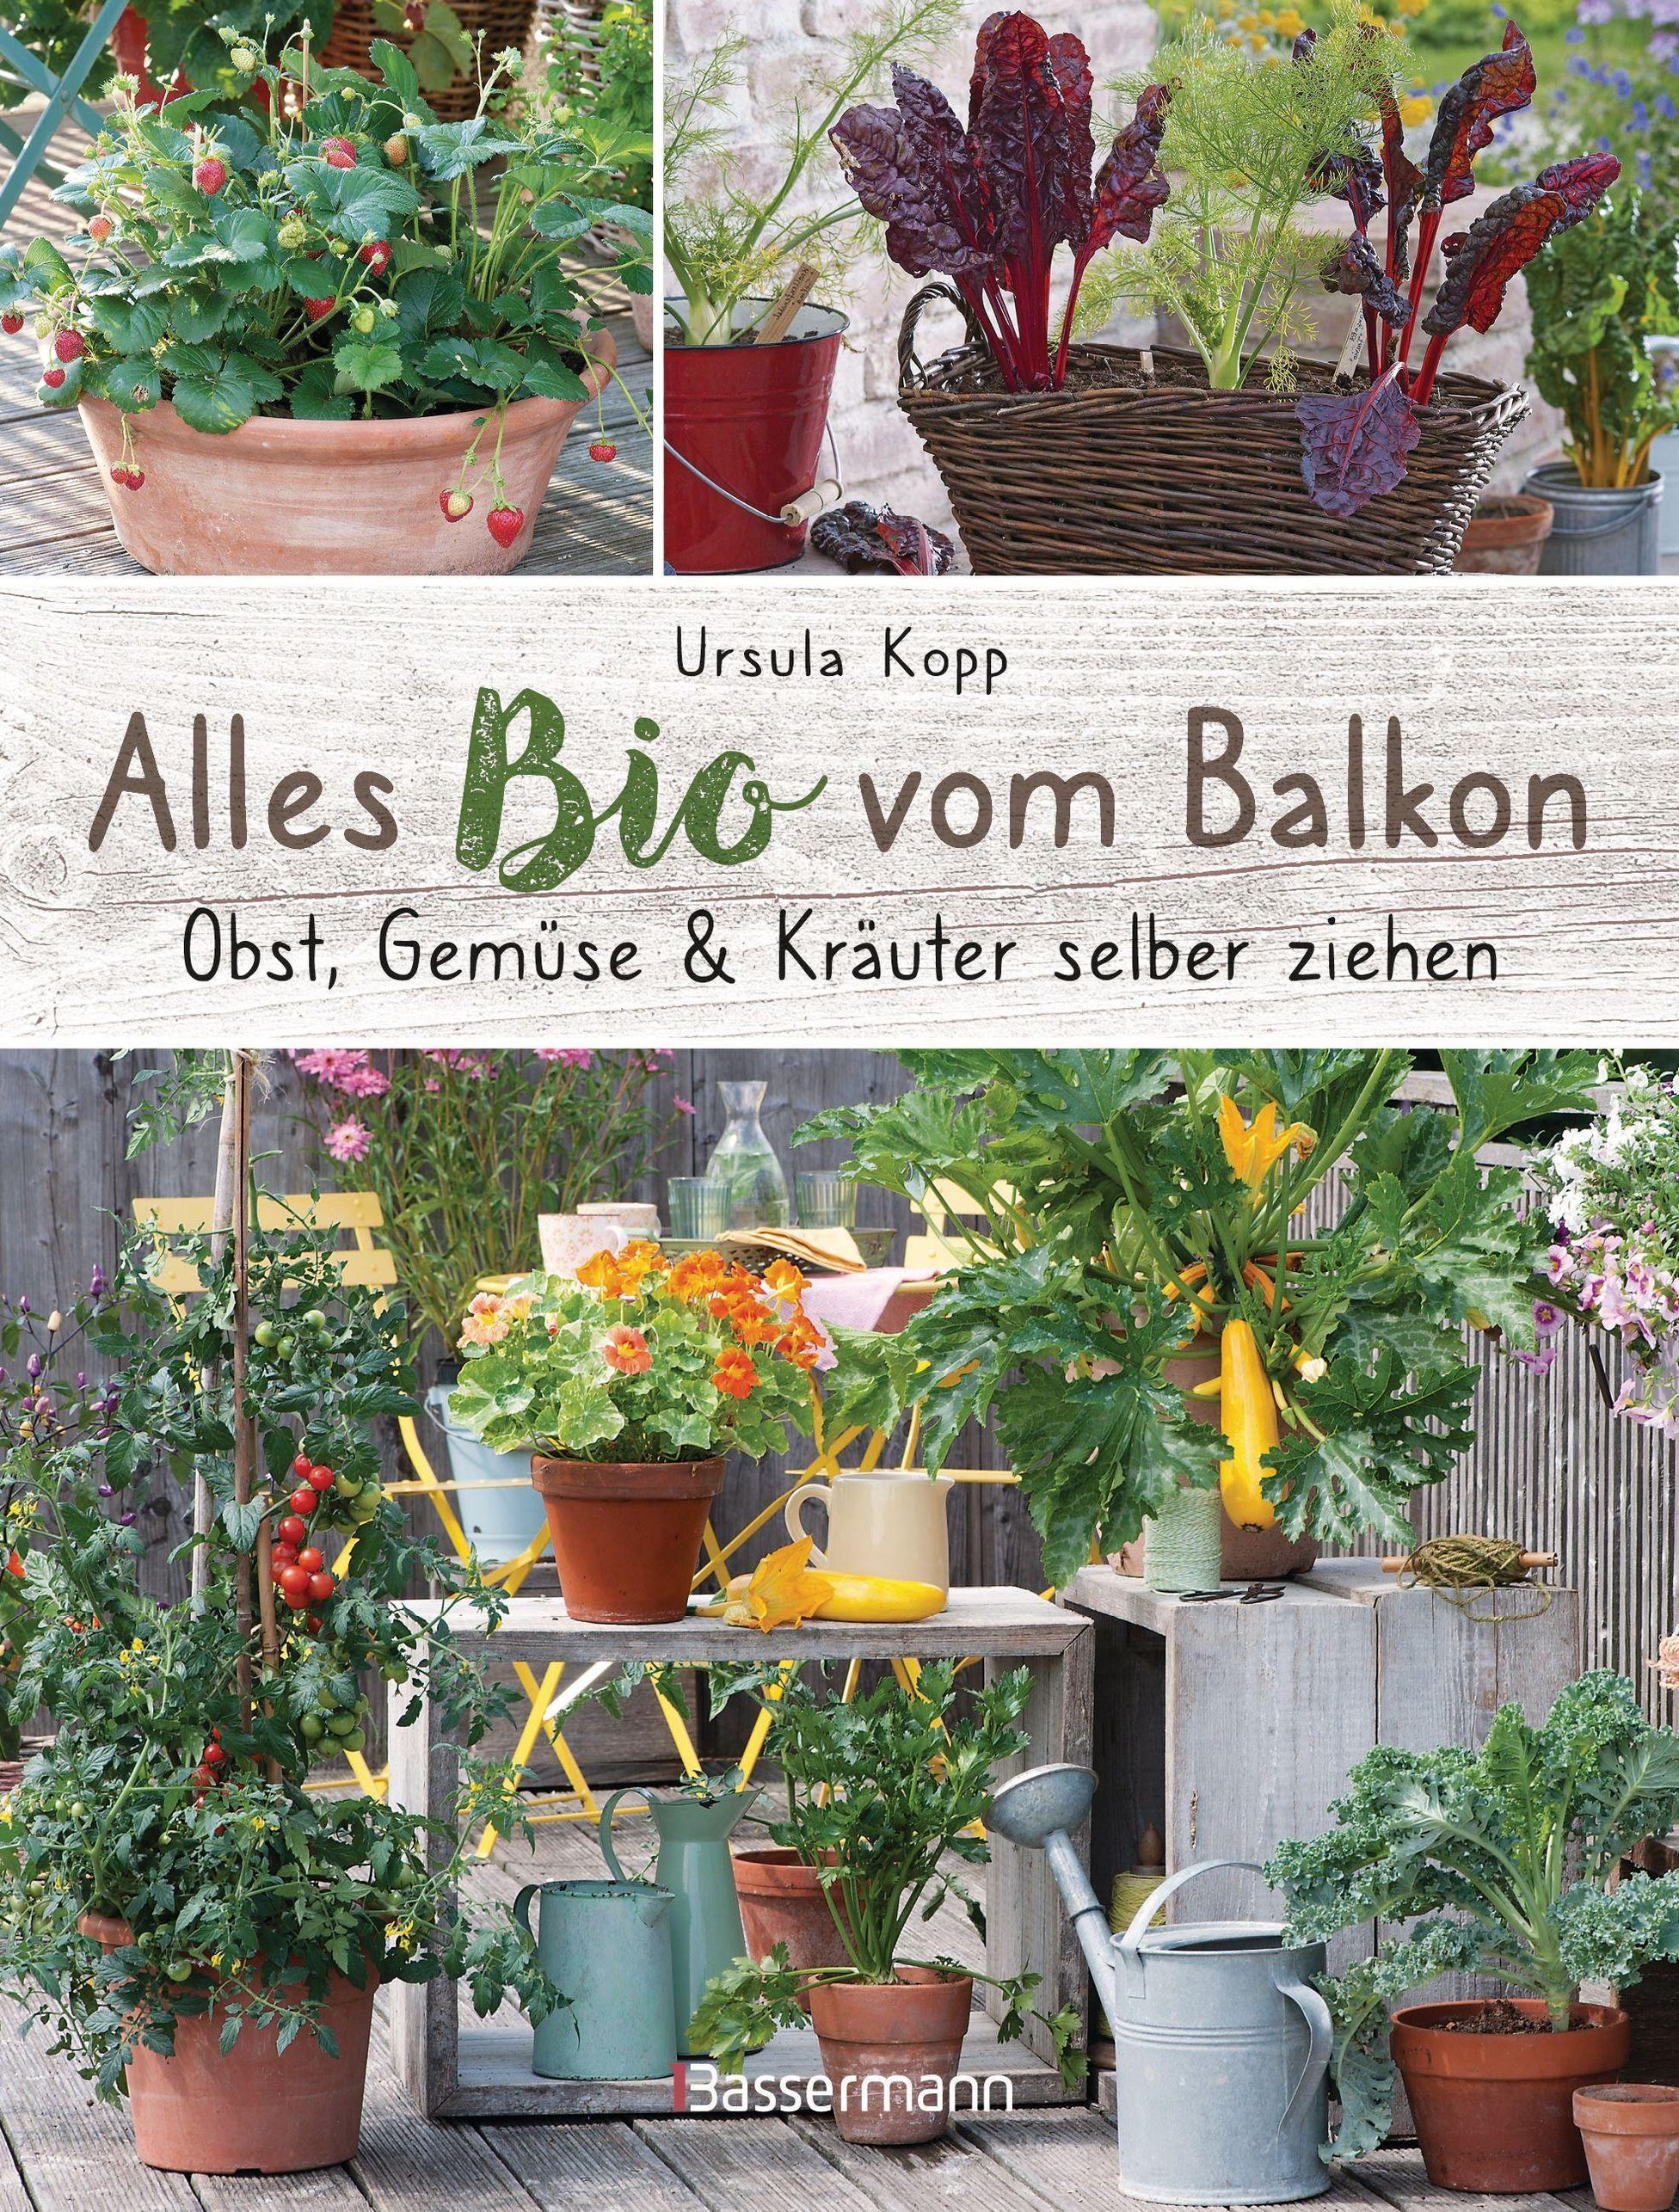 Alles Bio vom Balkon. Obst, Gemüse und Kräuter selber ziehen. | Weltbild.ch